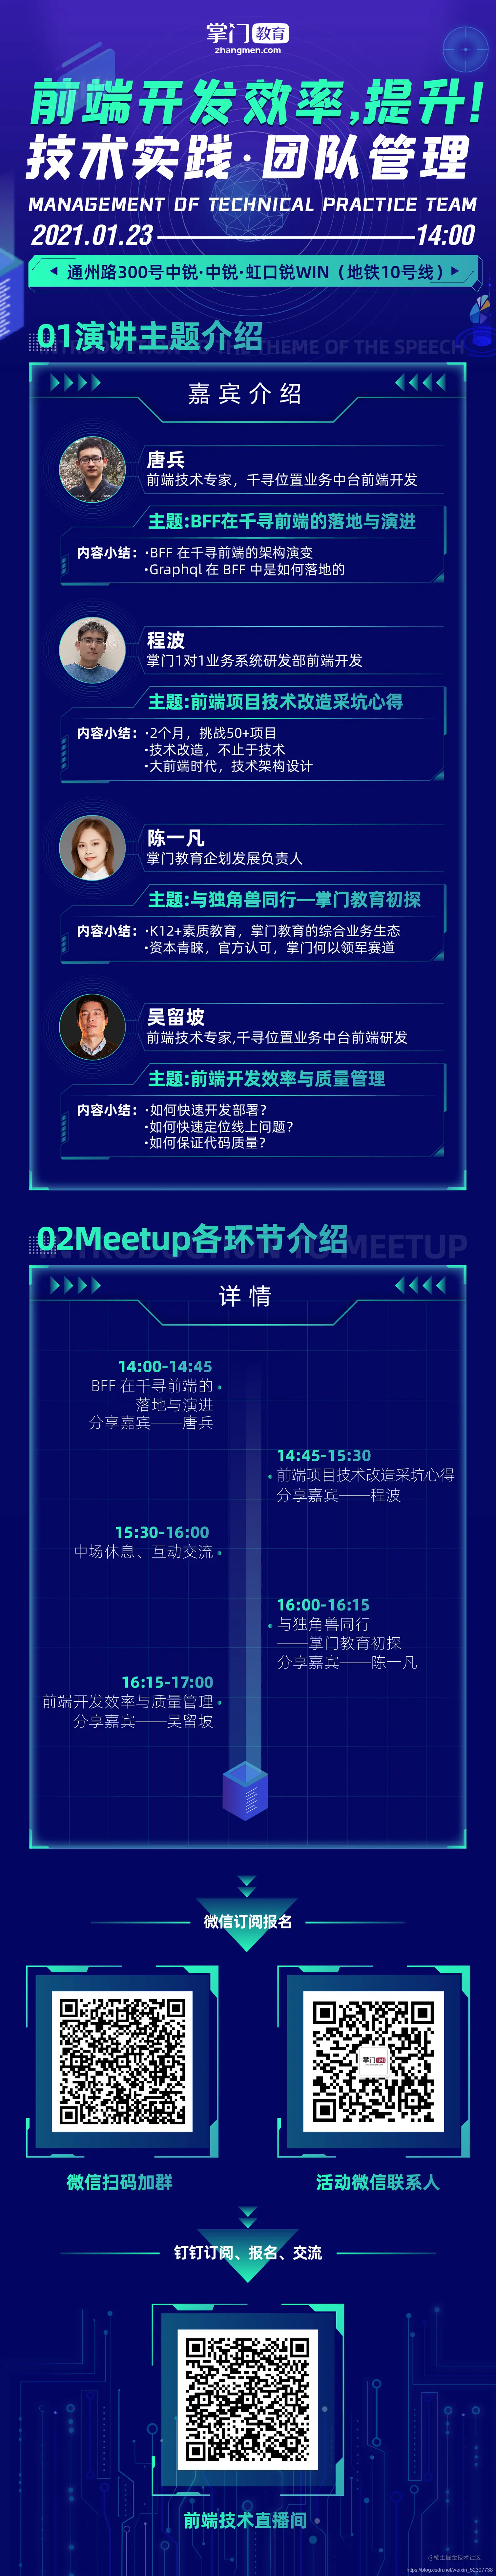 meetup邀请海报